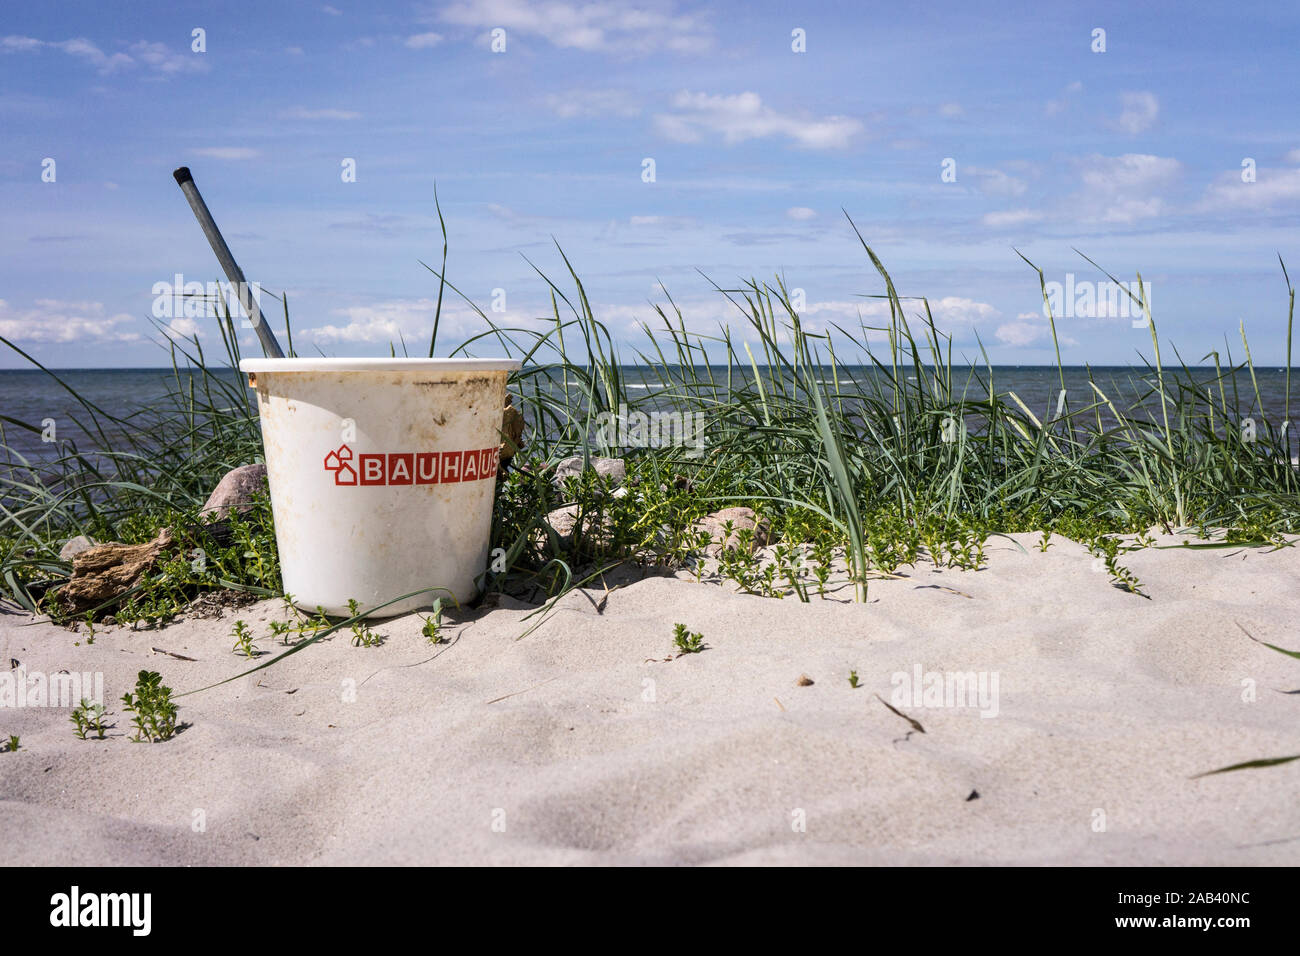 Ein zurückgelassener, mit Unrat gefüllter Plastikeimer vom Bauhaus am Strand |A left behind, filled with plastic trash bucket by Bauhaus on the beach| Stock Photo